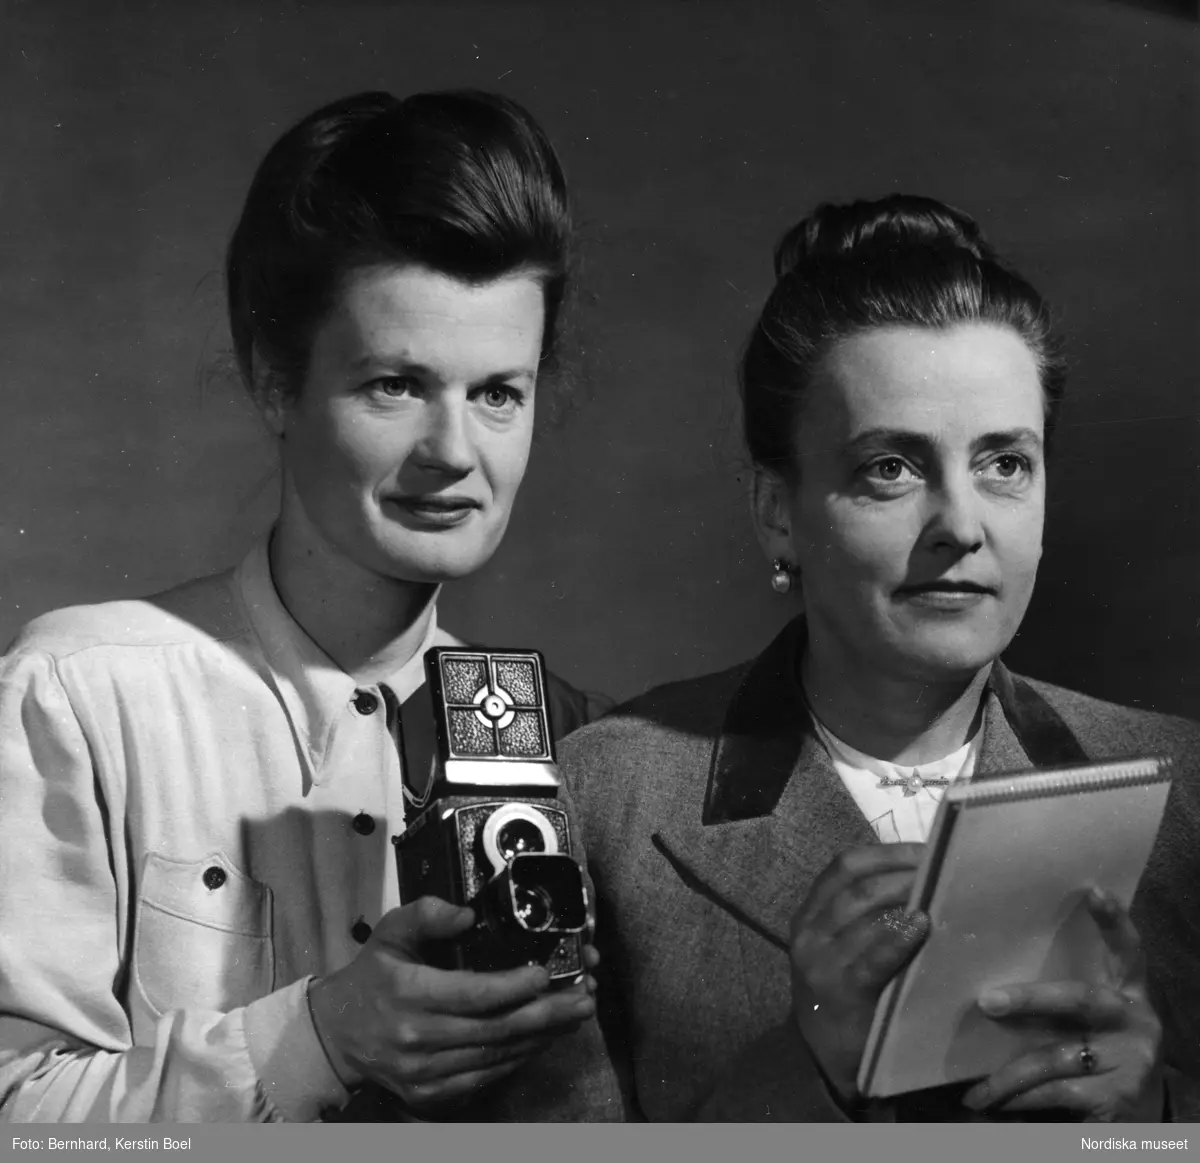 Fotografen Kerstin Bernhard hållandes en Rolleiflex-kamera och journalisten Ingrid af Ström hållandes ett notisblock